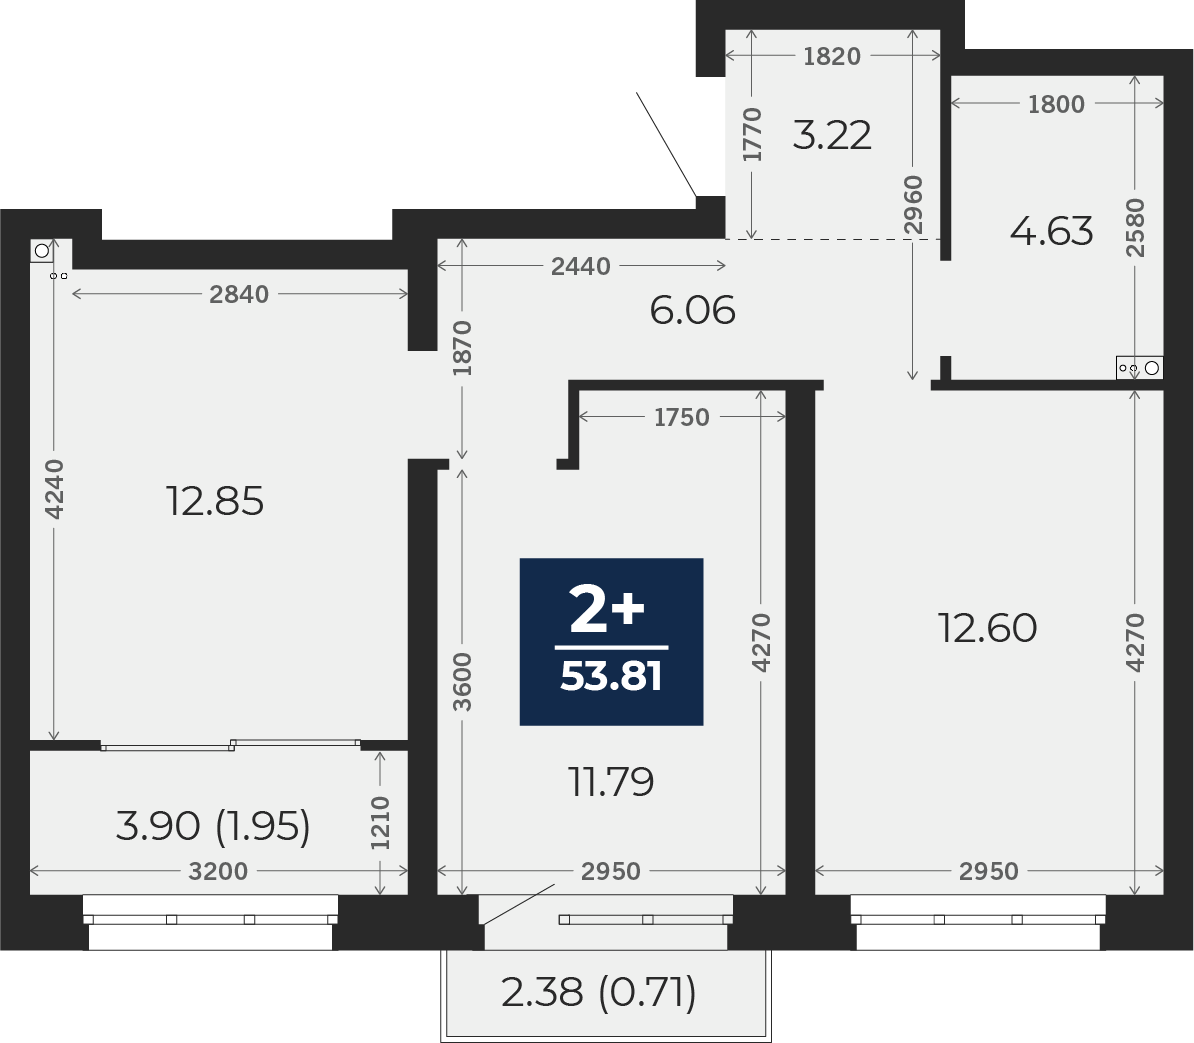 Квартира № 572, 2-комнатная, 53.81 кв. м, 6 этаж